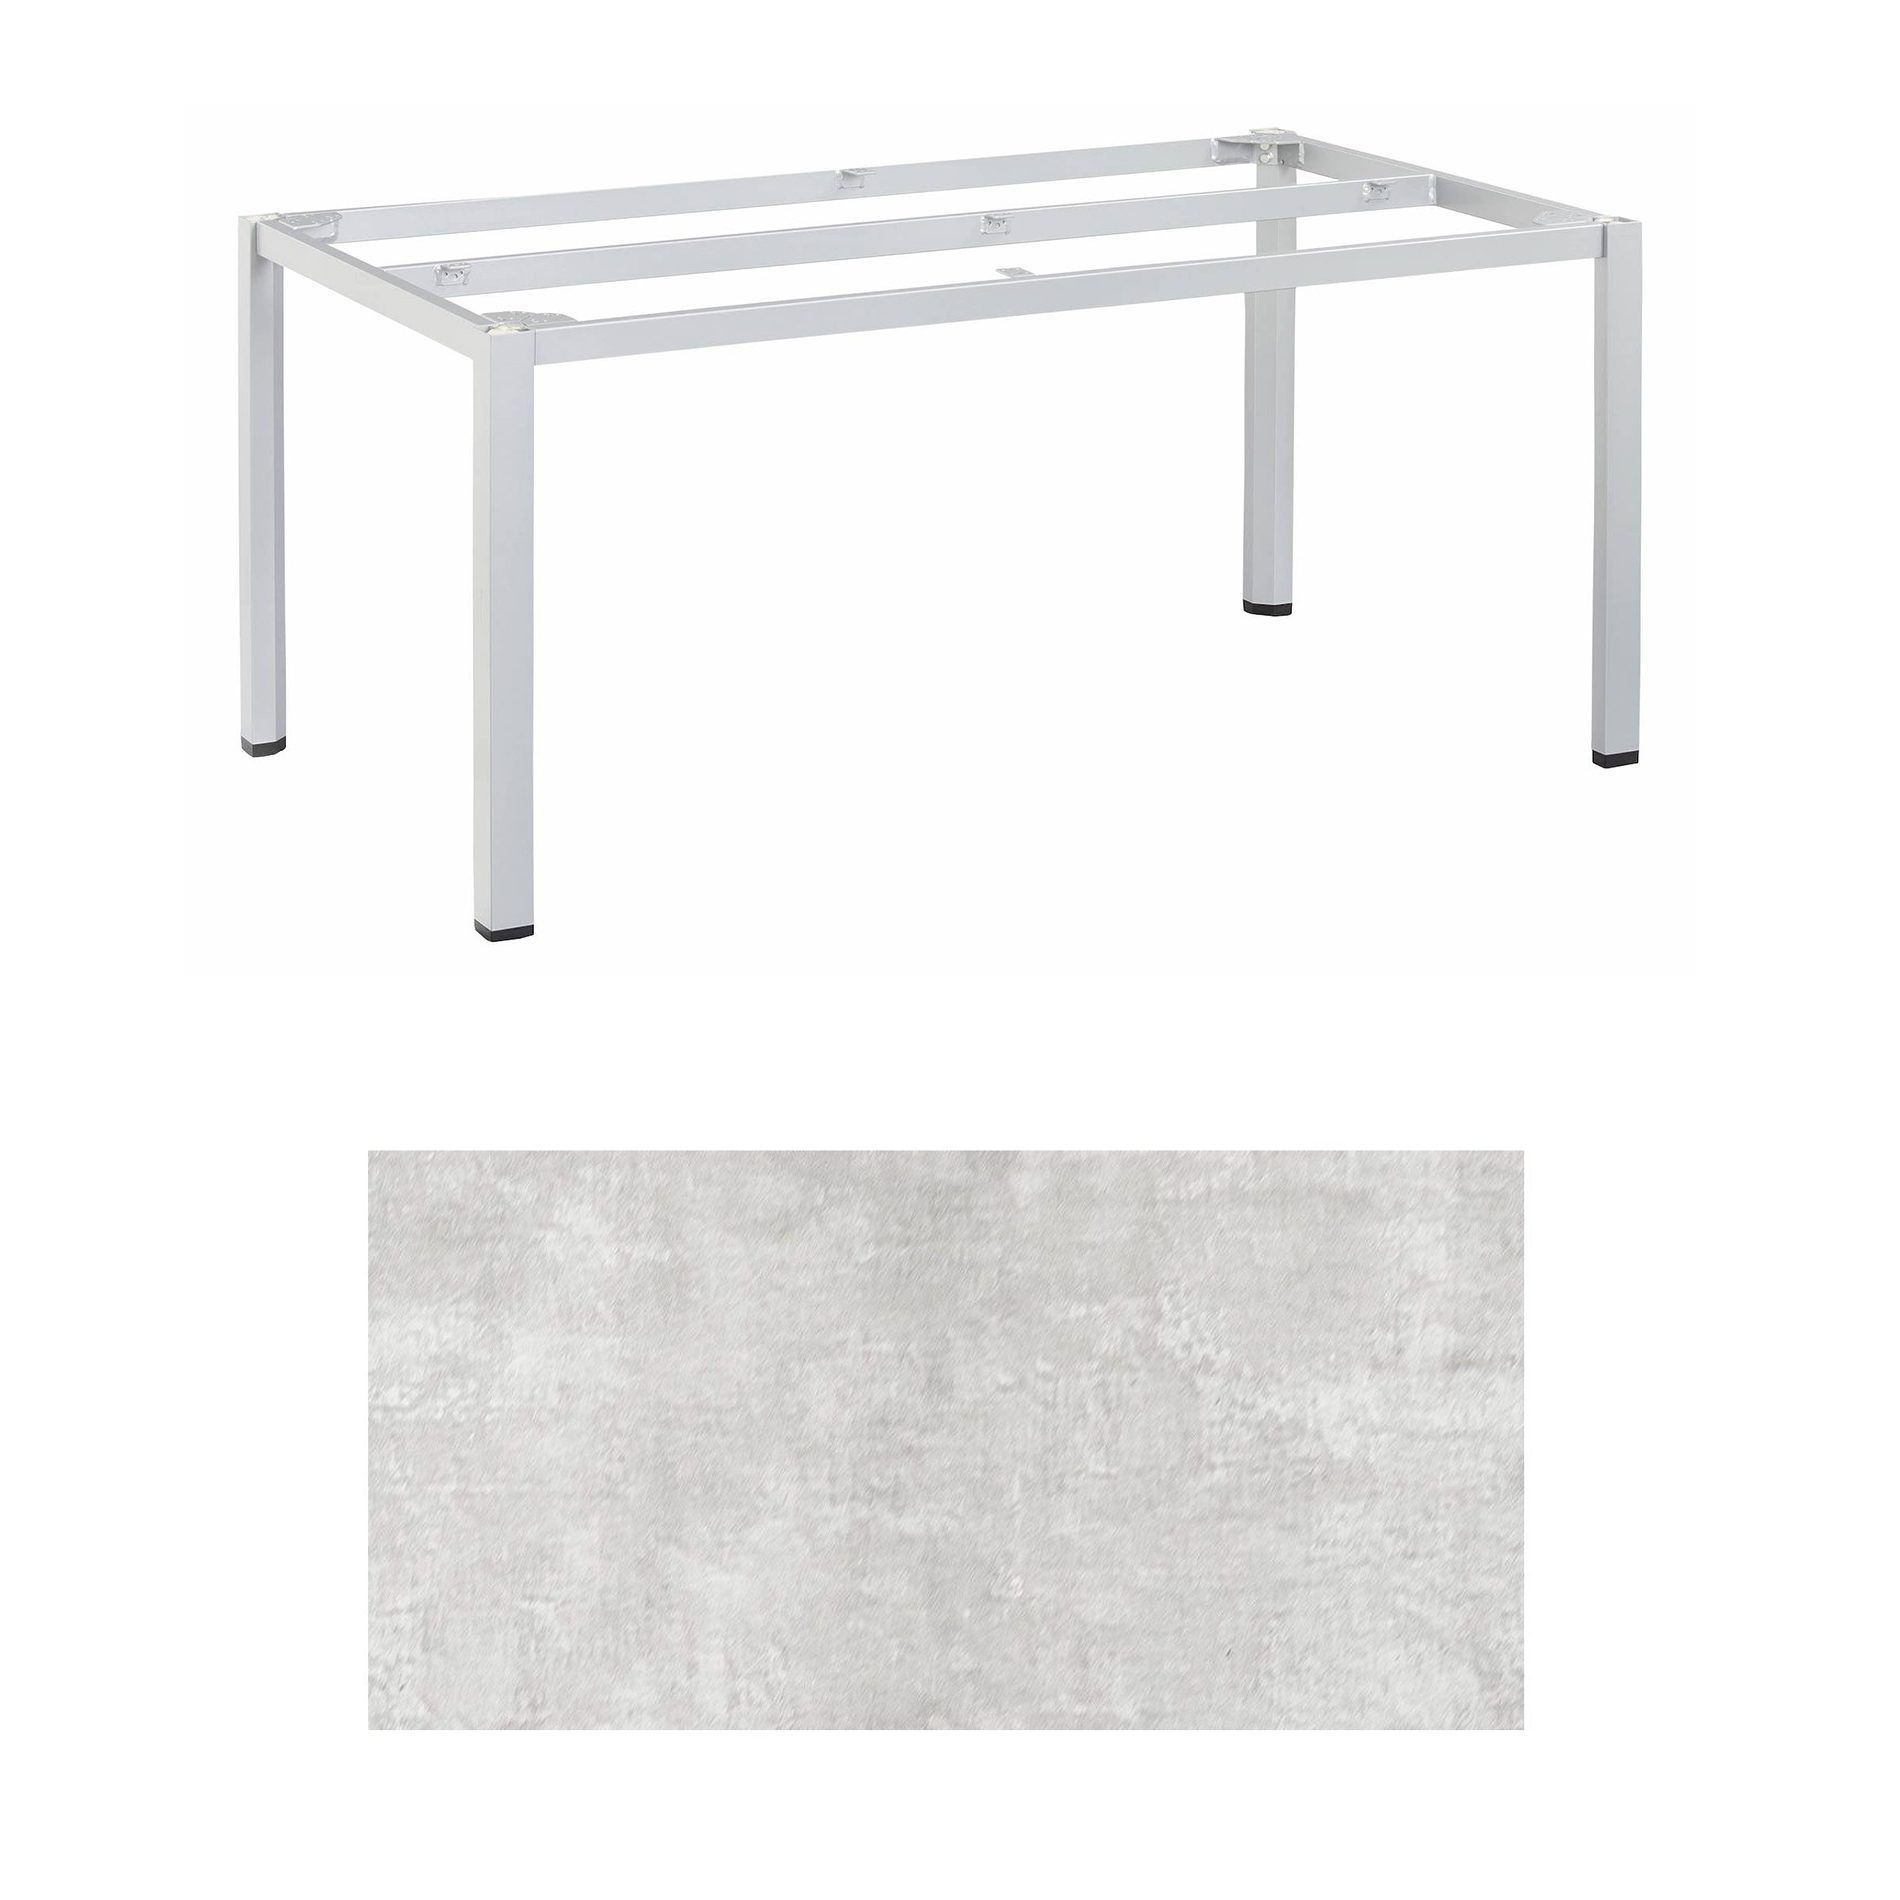 Kettler "Cubic" Tischgestell 180x95 cm, Aluminium silber mit HPL-Platte hellgrau meliert